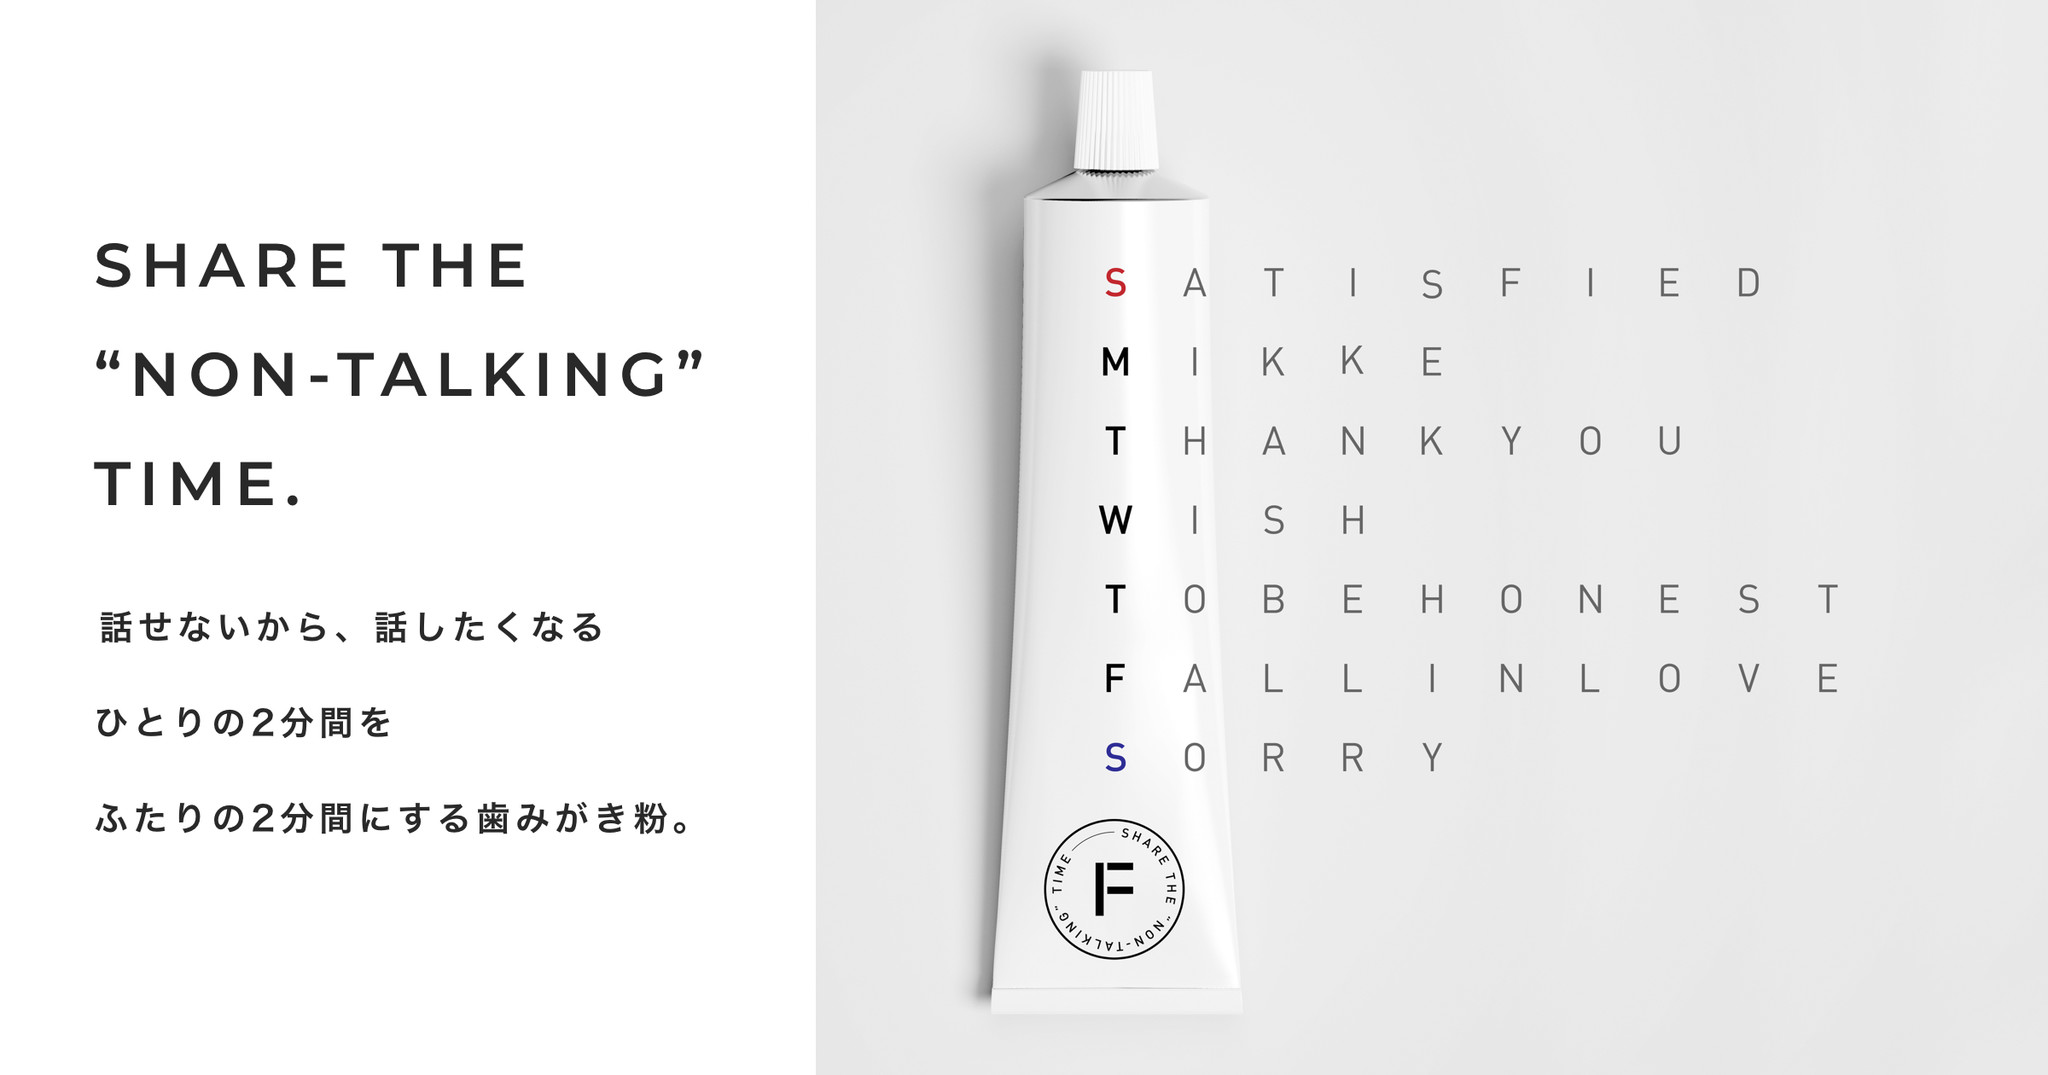 話せないから 話したくなる ふたりのための歯みがき粉 ブランド Futari 誕生 株式会社mikkeのプレスリリース